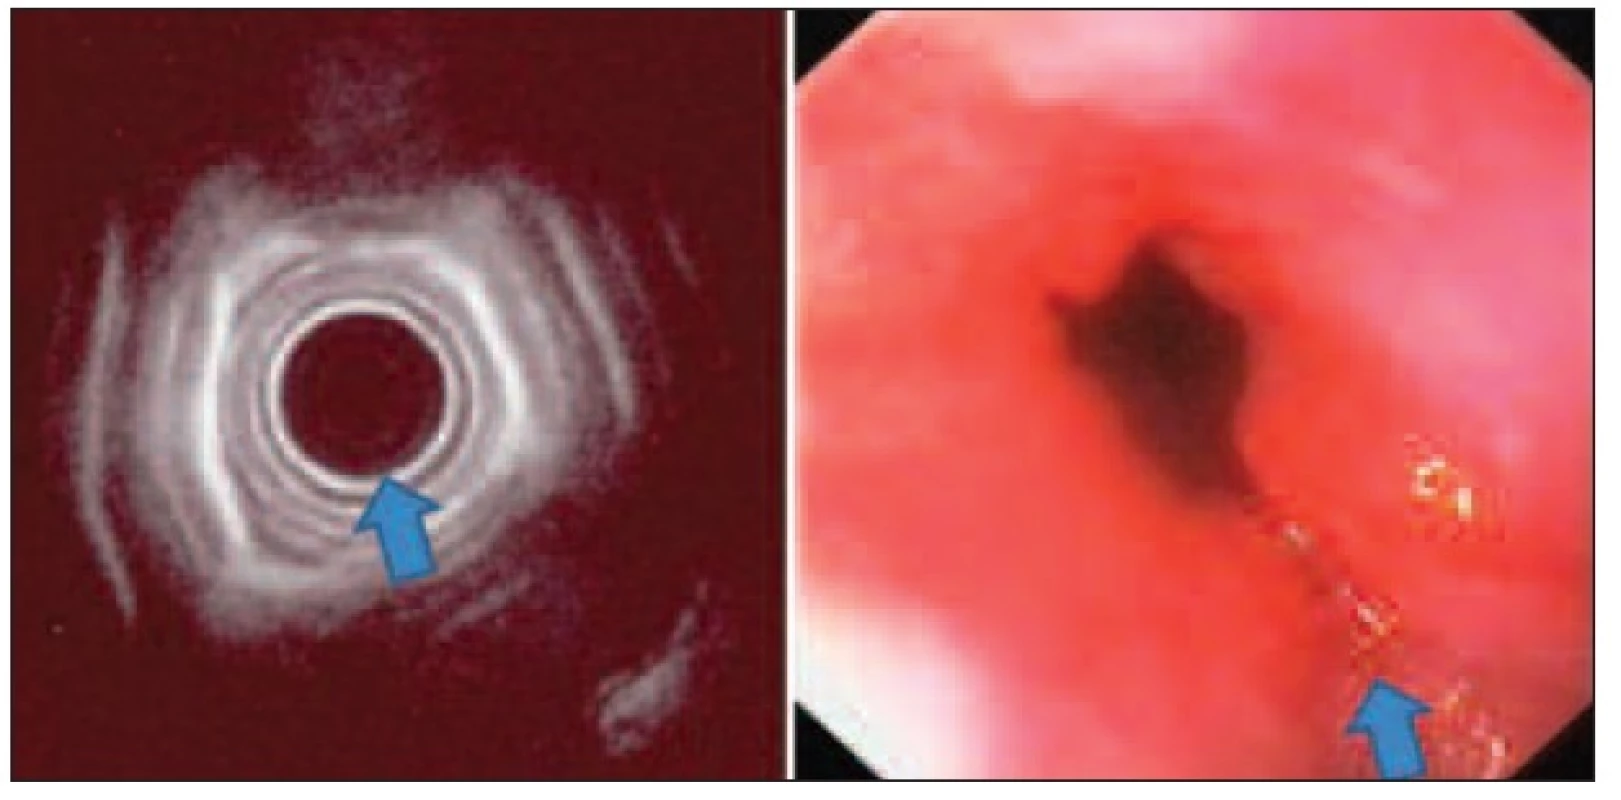 Radiální EUS jícnu v korelaci s endoskopickým nálezem při časném adenokarcinomu v terénu Barrettova jícnu – nerovnosti a rigidita stěny jícnu, bez invaze submukózy, provedena endoskopická mukozektomie
Fig. 3: Radial oesophageal endoscopic ultrasound in correlation with endoscopic picture in early oesophageal carcinoma in Barrett’s oesophagus – roughness and rigidity of the oesophageal wall, without submucosal invasion, treated by endoscopic musocal resection